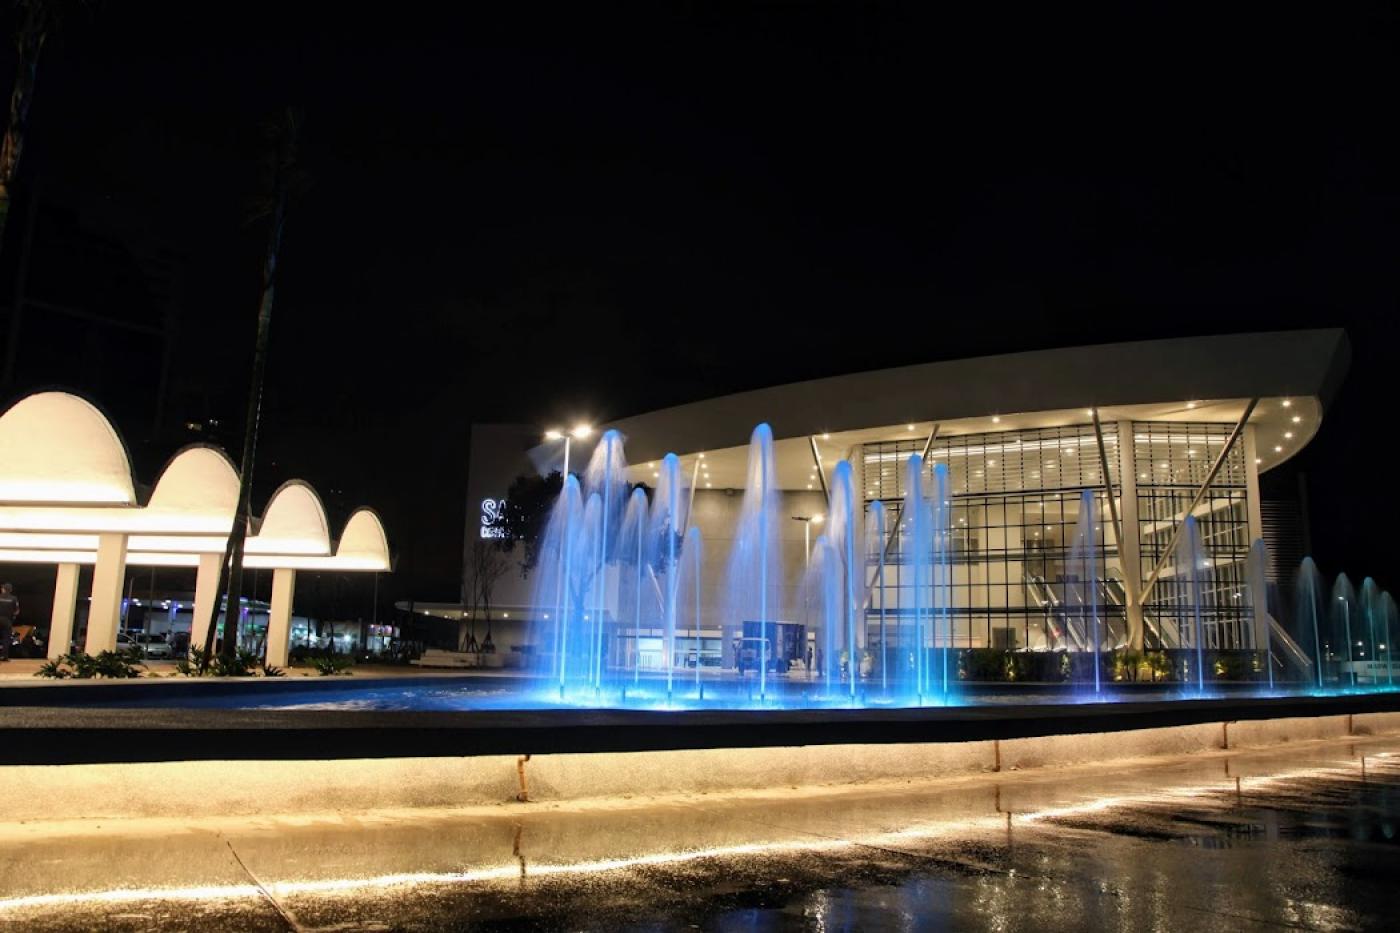 Foto noturna do centro de convenções com chafariz iluminado em azul a frente. #paratodosverem